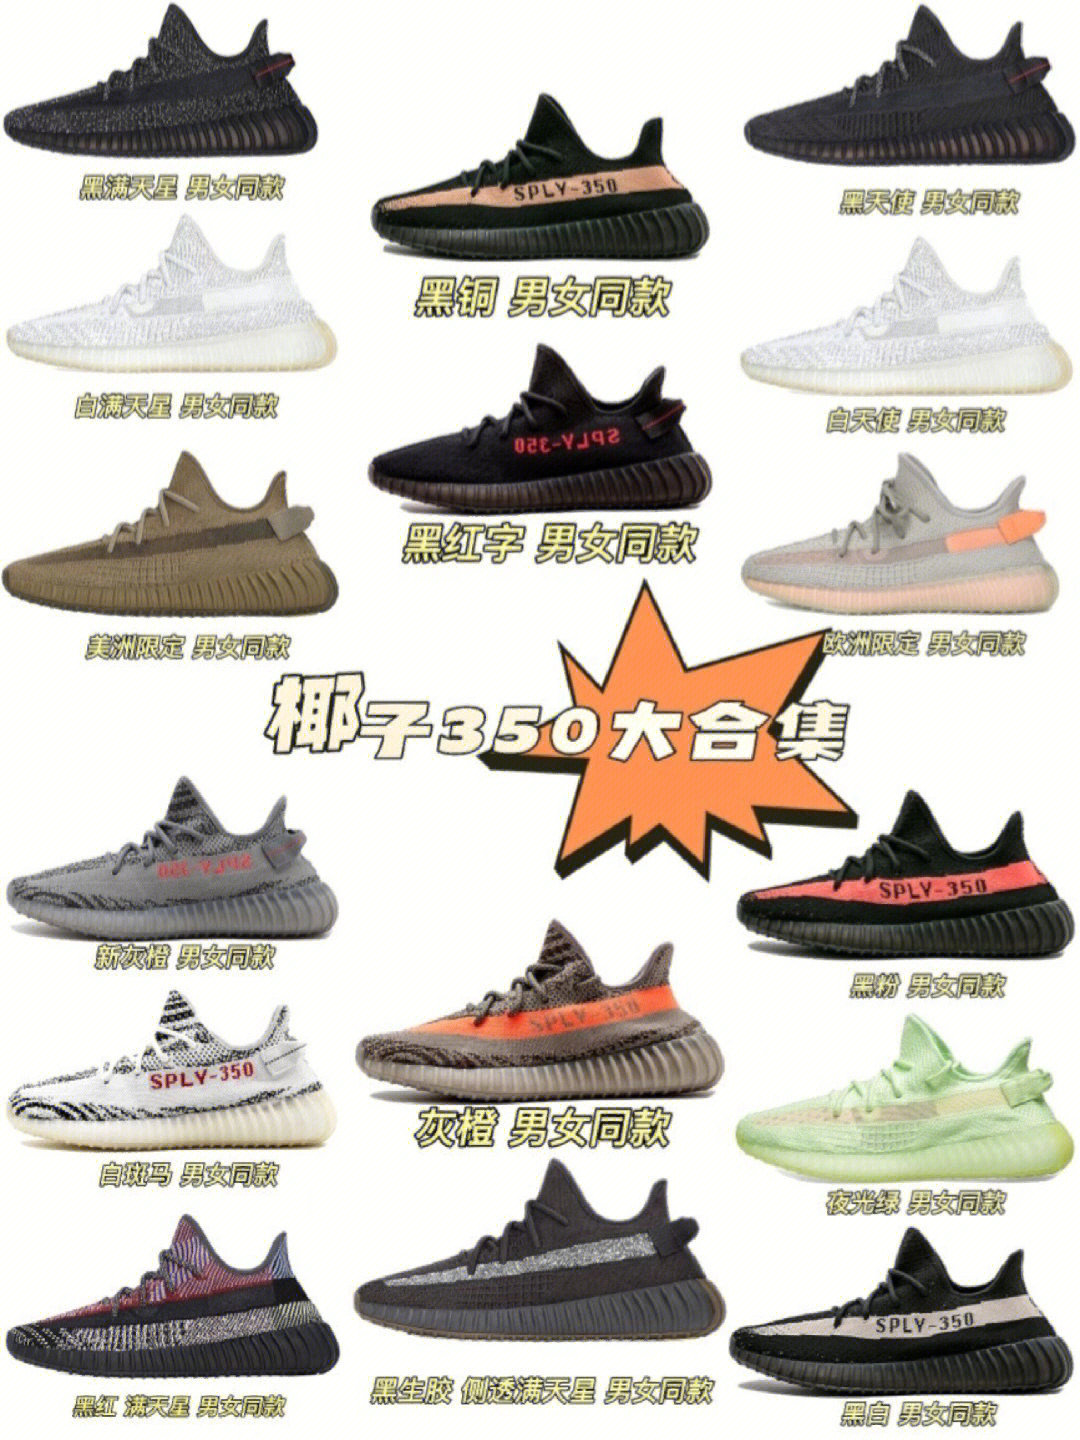 2020椰子鞋颜色排行榜图片